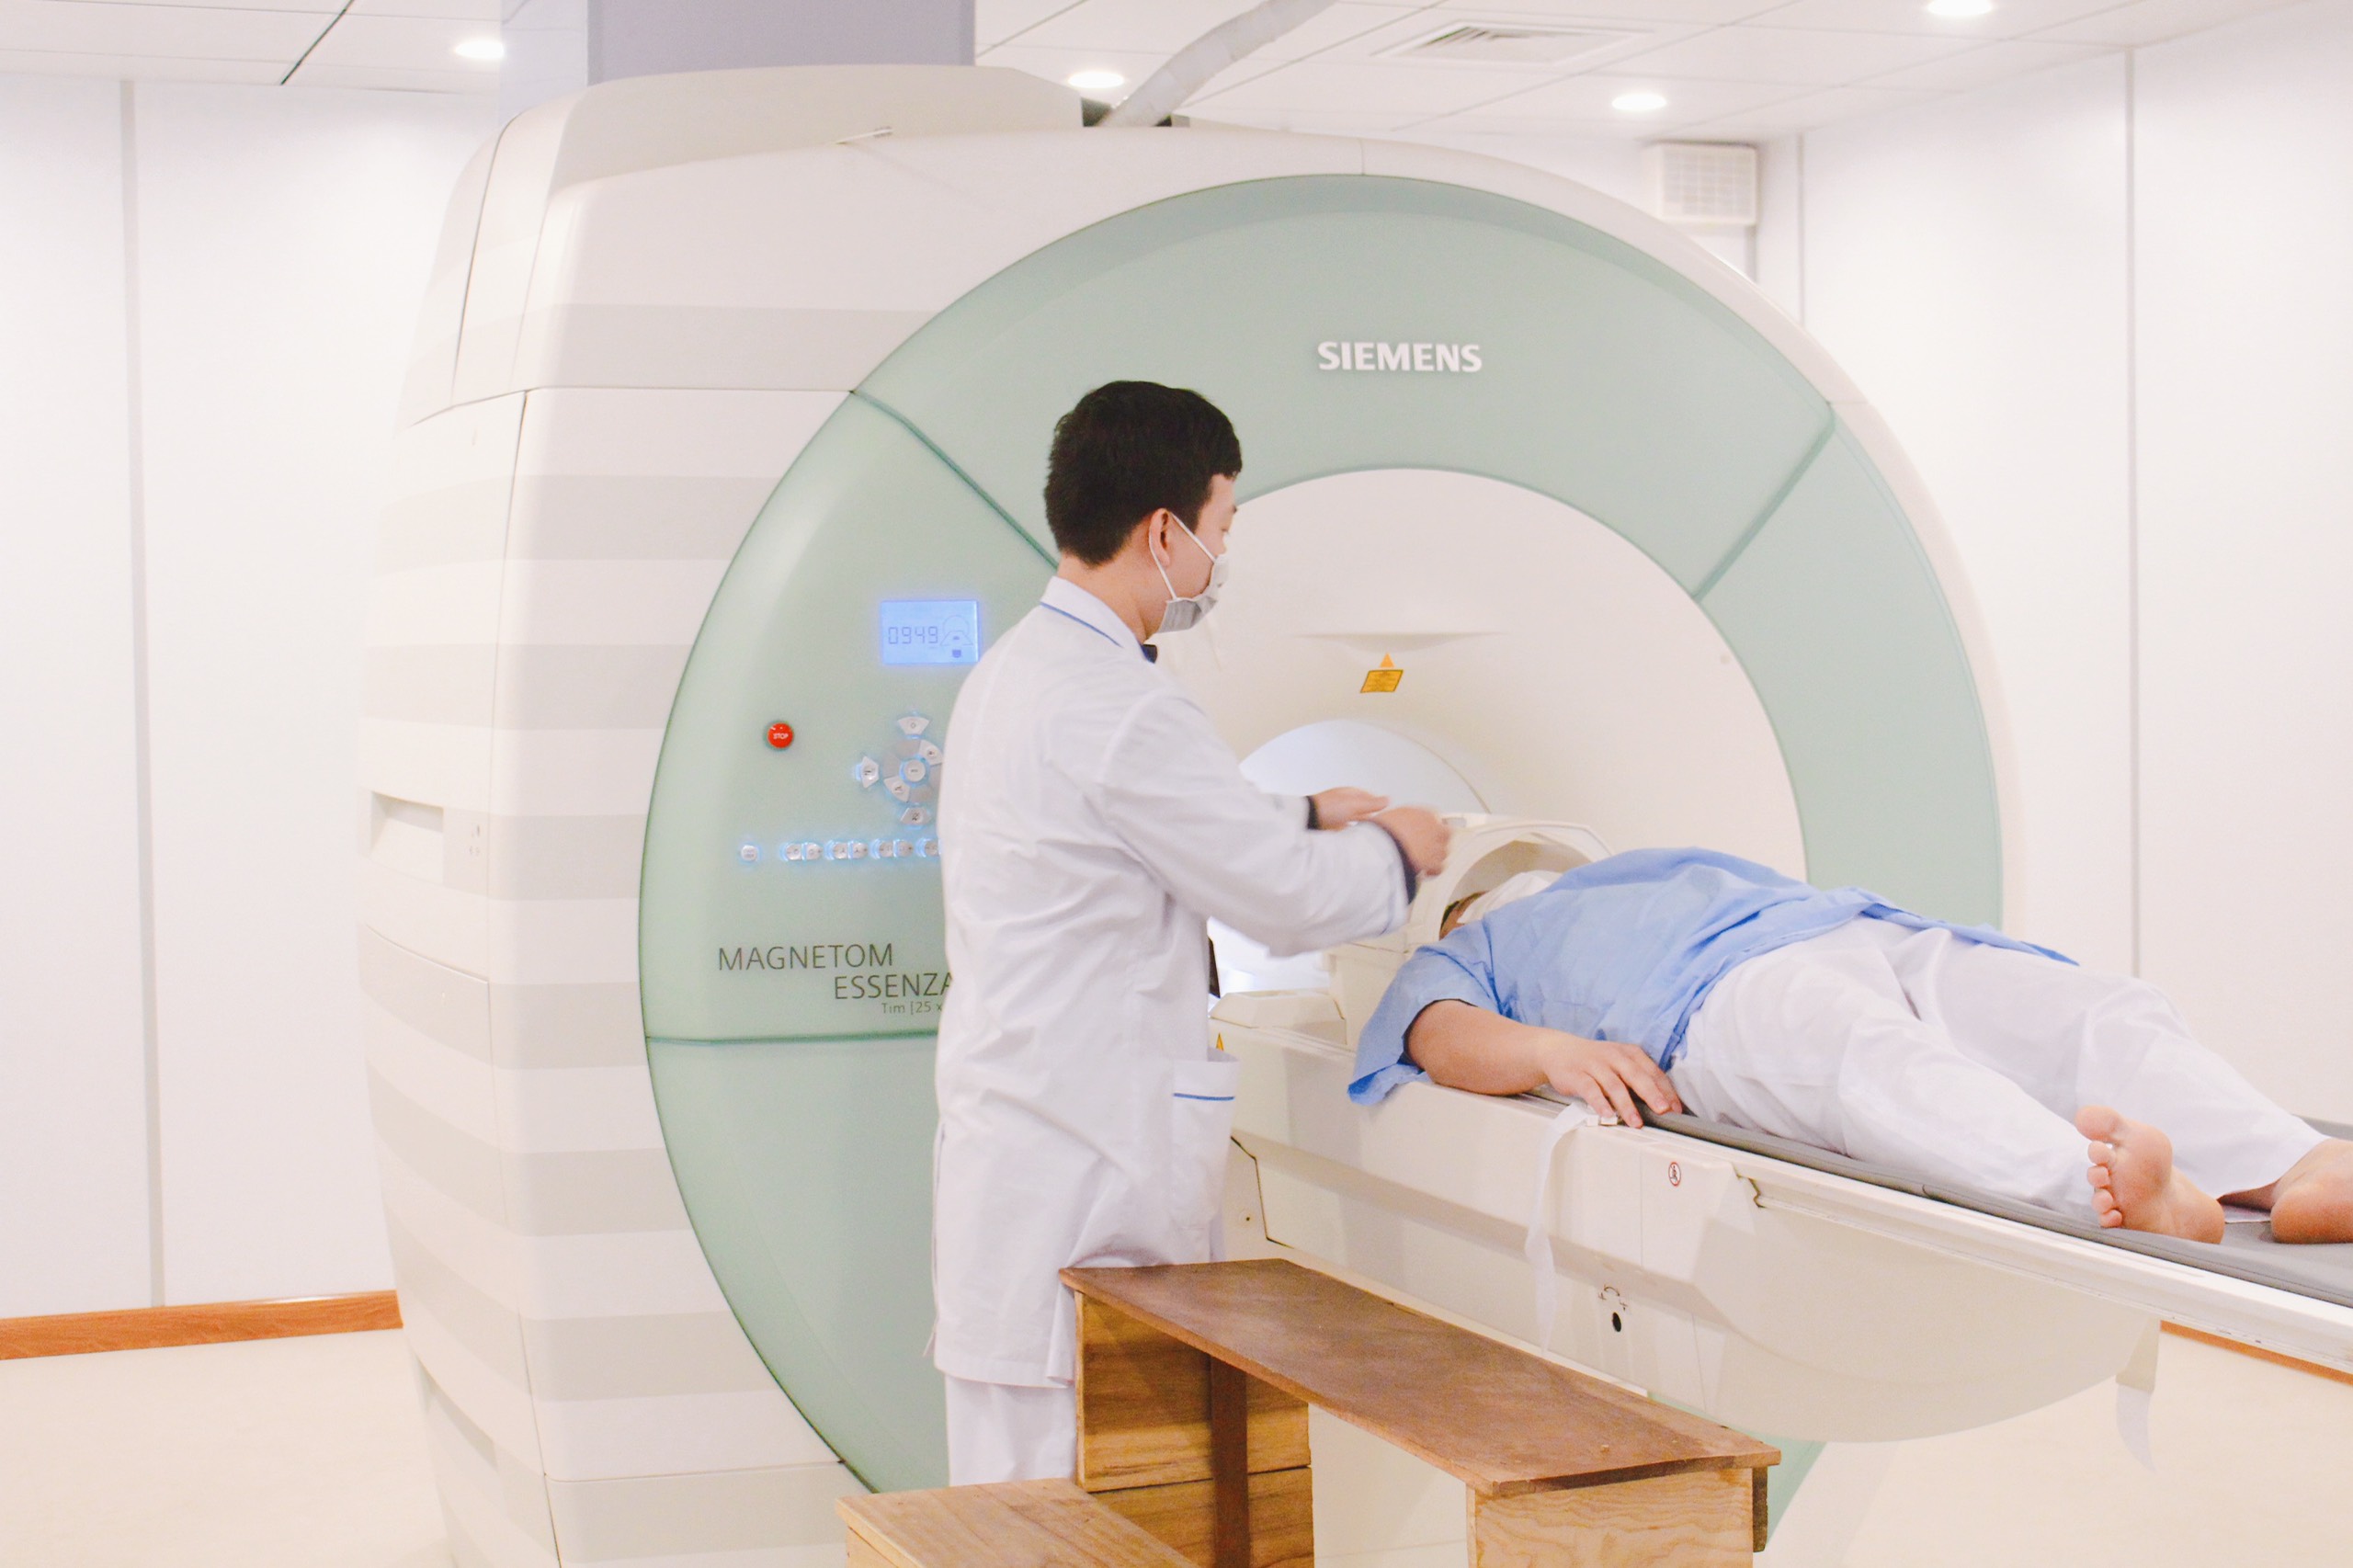 HỘI THẢO ỨNG DỤNG MRI 1.5 TESLA TRONG LÂM SÀNG TẠI BỆNH VIỆN ĐA KHOA HÒA BÌNH